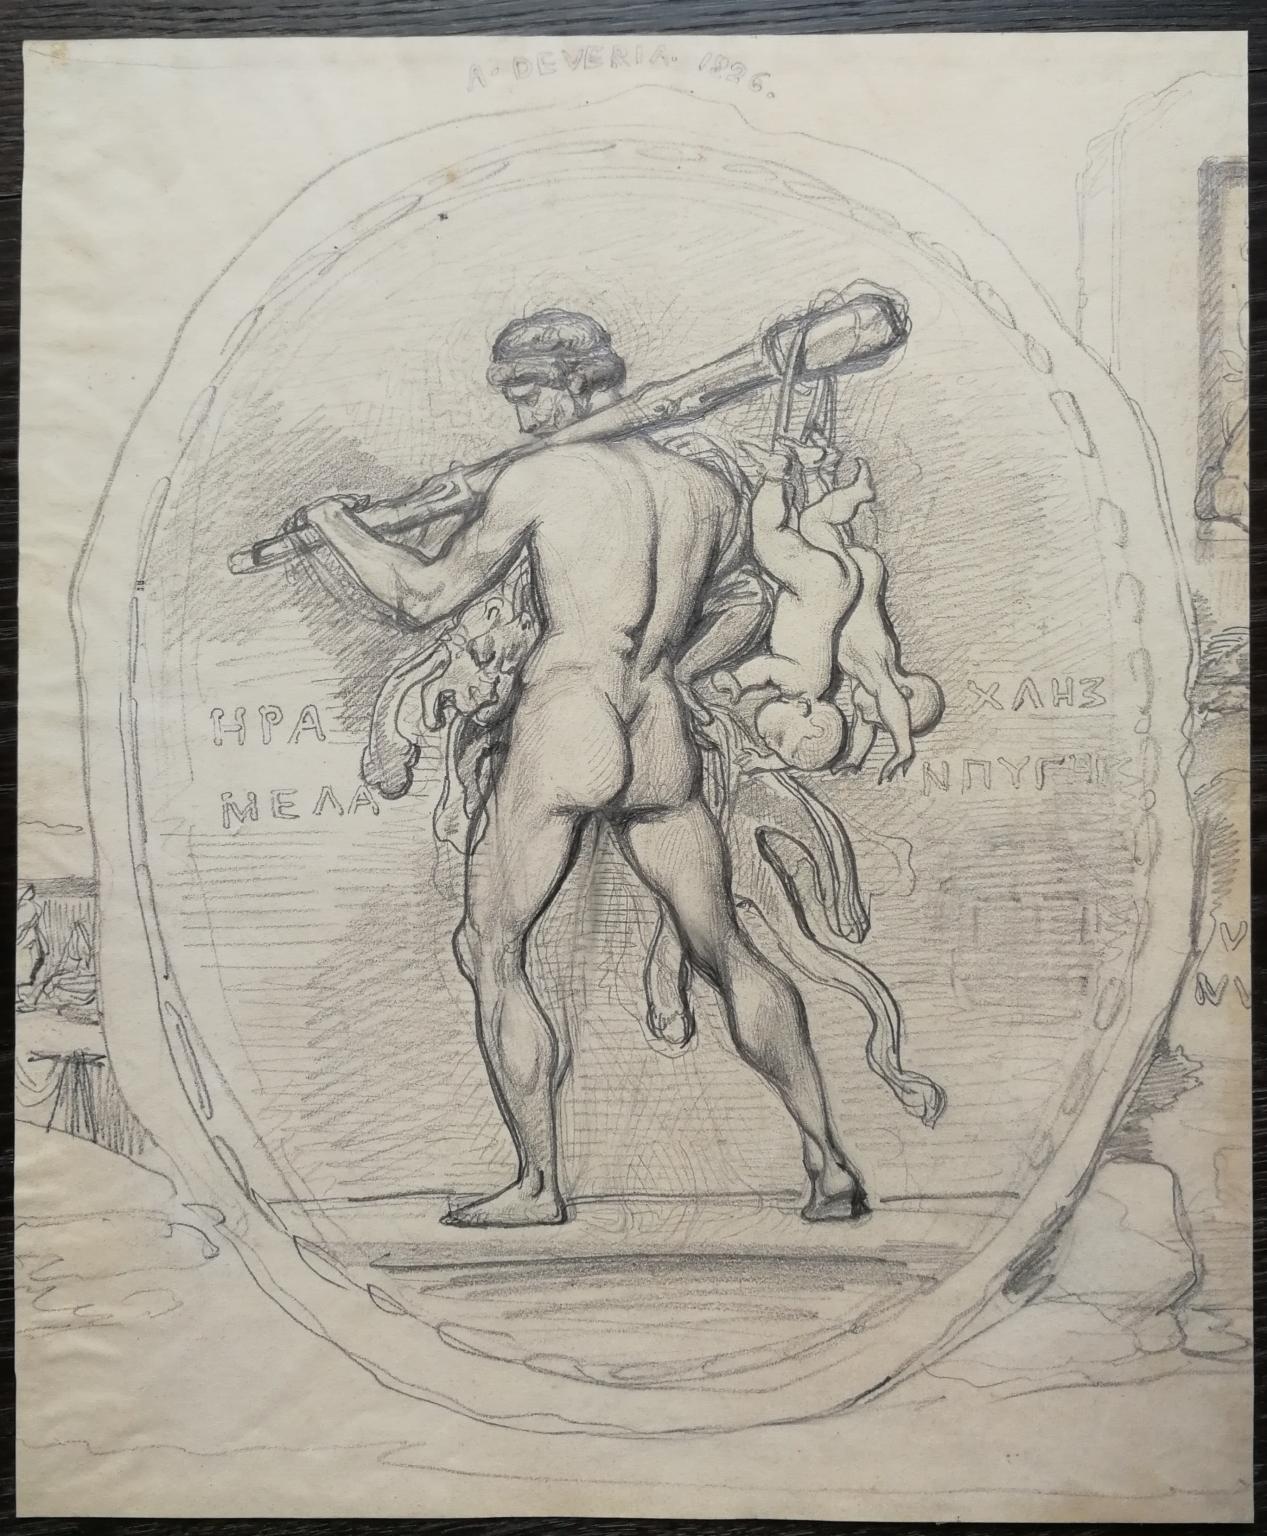 Französische neoklassizistische mythologische figurative Zeichnung des frühen 18. Jahrhunderts – Art von Achille Devéria